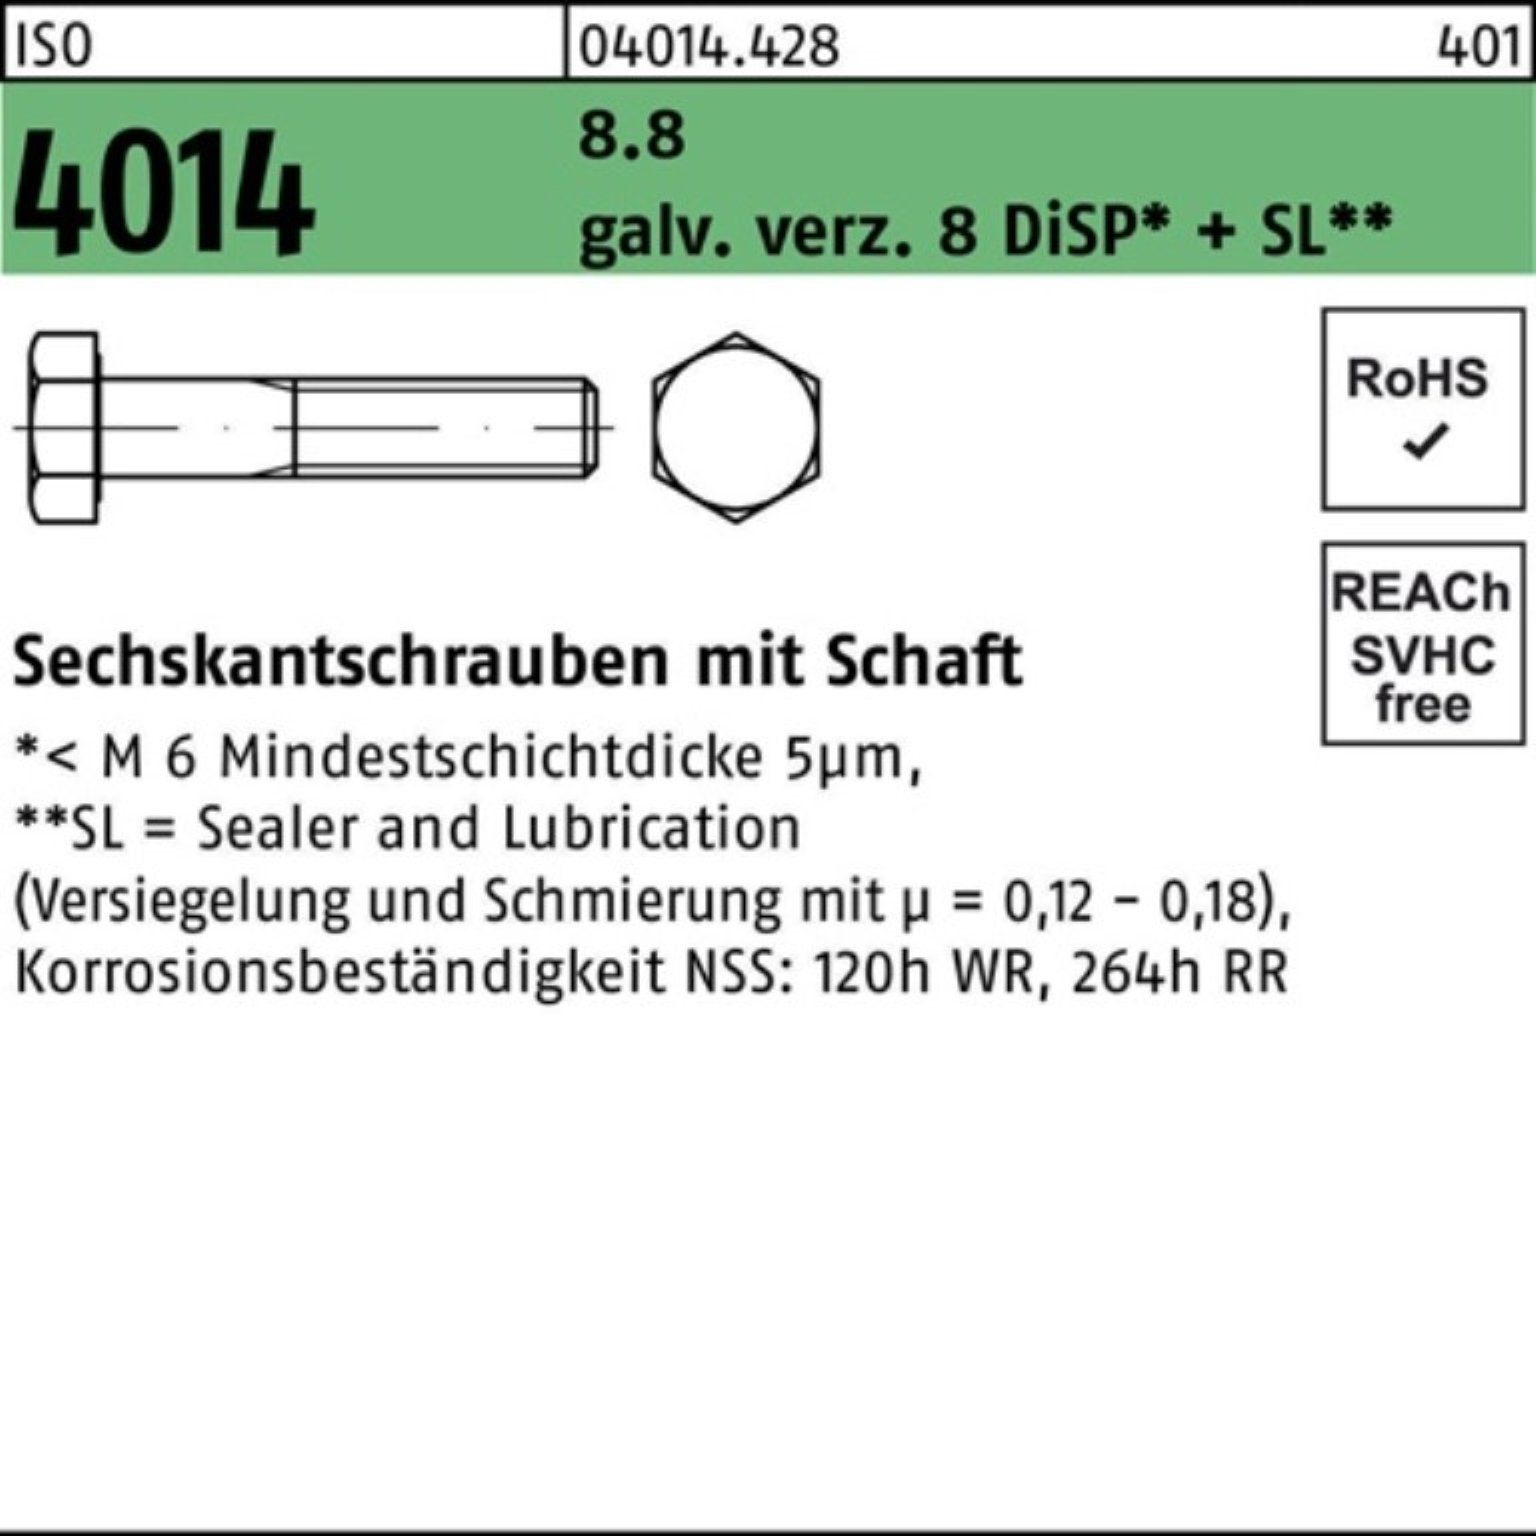 Bufab Sechskantschraube 100er Pack Sechskantschraube ISO 4014 Schaft M20x280 8.8 galv.verz. 8